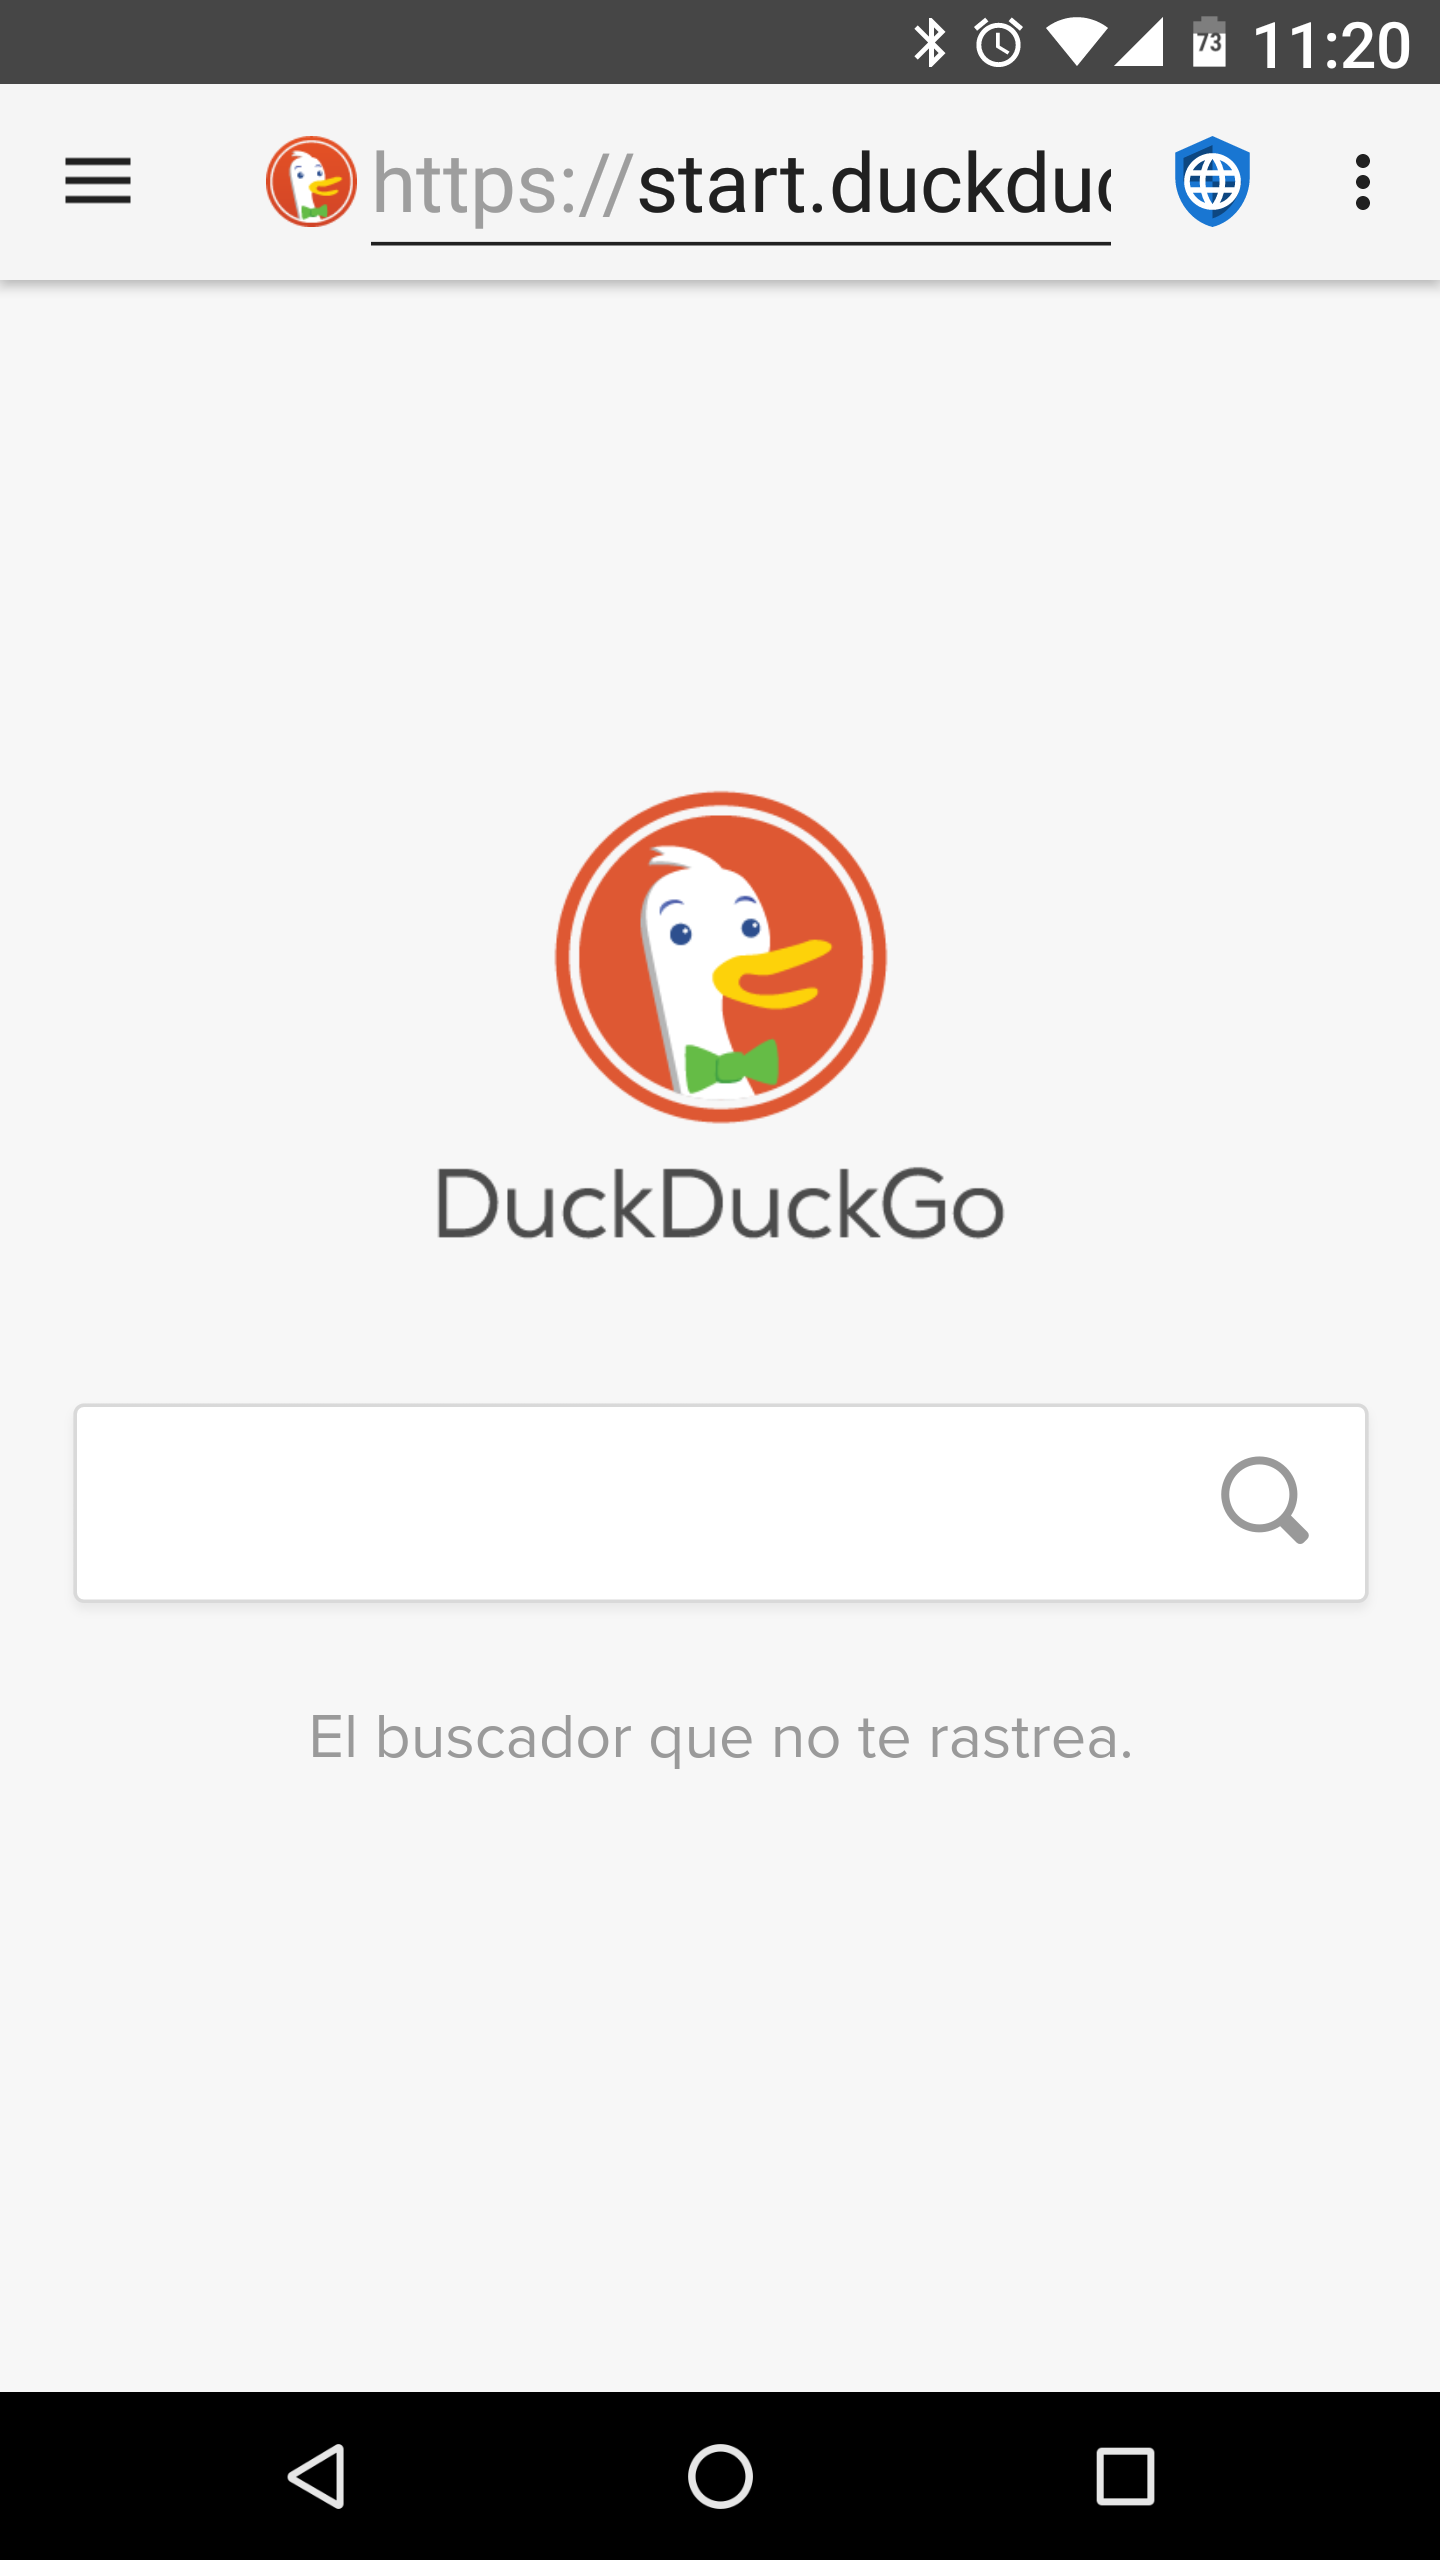 fastlane/metadata/android/es/images/phoneScreenshots/01-DuckDuckGo.png